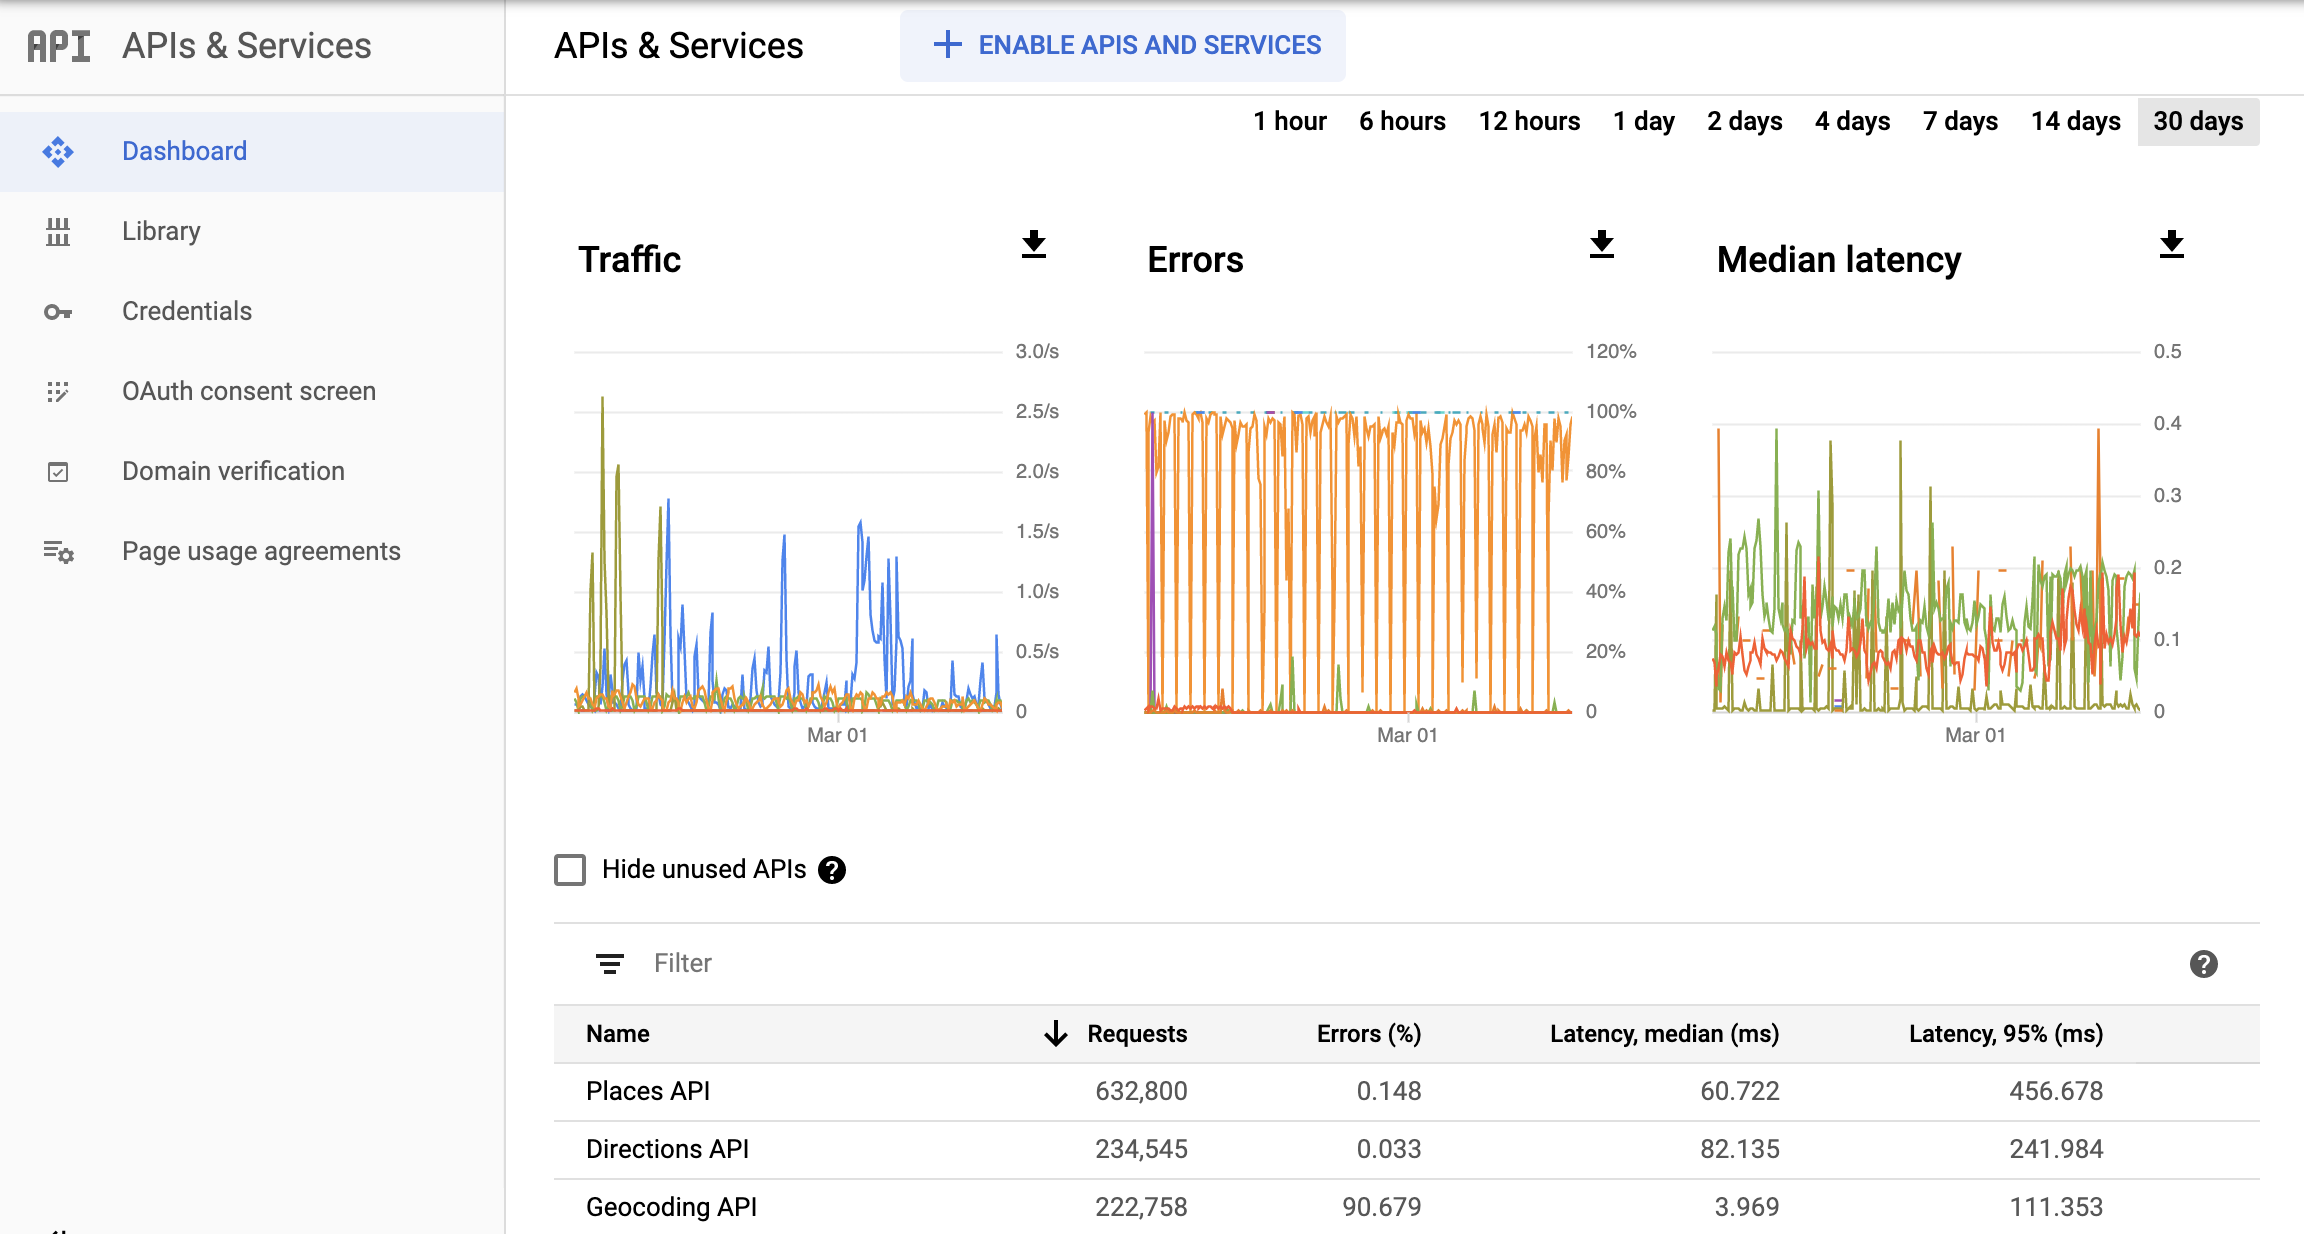 צילום מסך של הדף Monitoring APIs במסוף Google Cloud, שבו מוצגים ממשקי ה-API Services (שירותים)
  מרכז השליטה בדוחות. הוא מציג תרשימים נפרדים עבור &#39;תנועה&#39;, &#39;שגיאות&#39; ו&#39;זמן אחזור חציוני&#39;. התרשימים האלה
  יכולה להציג נתונים בטווח של שעה אחת עד 30 ימים.